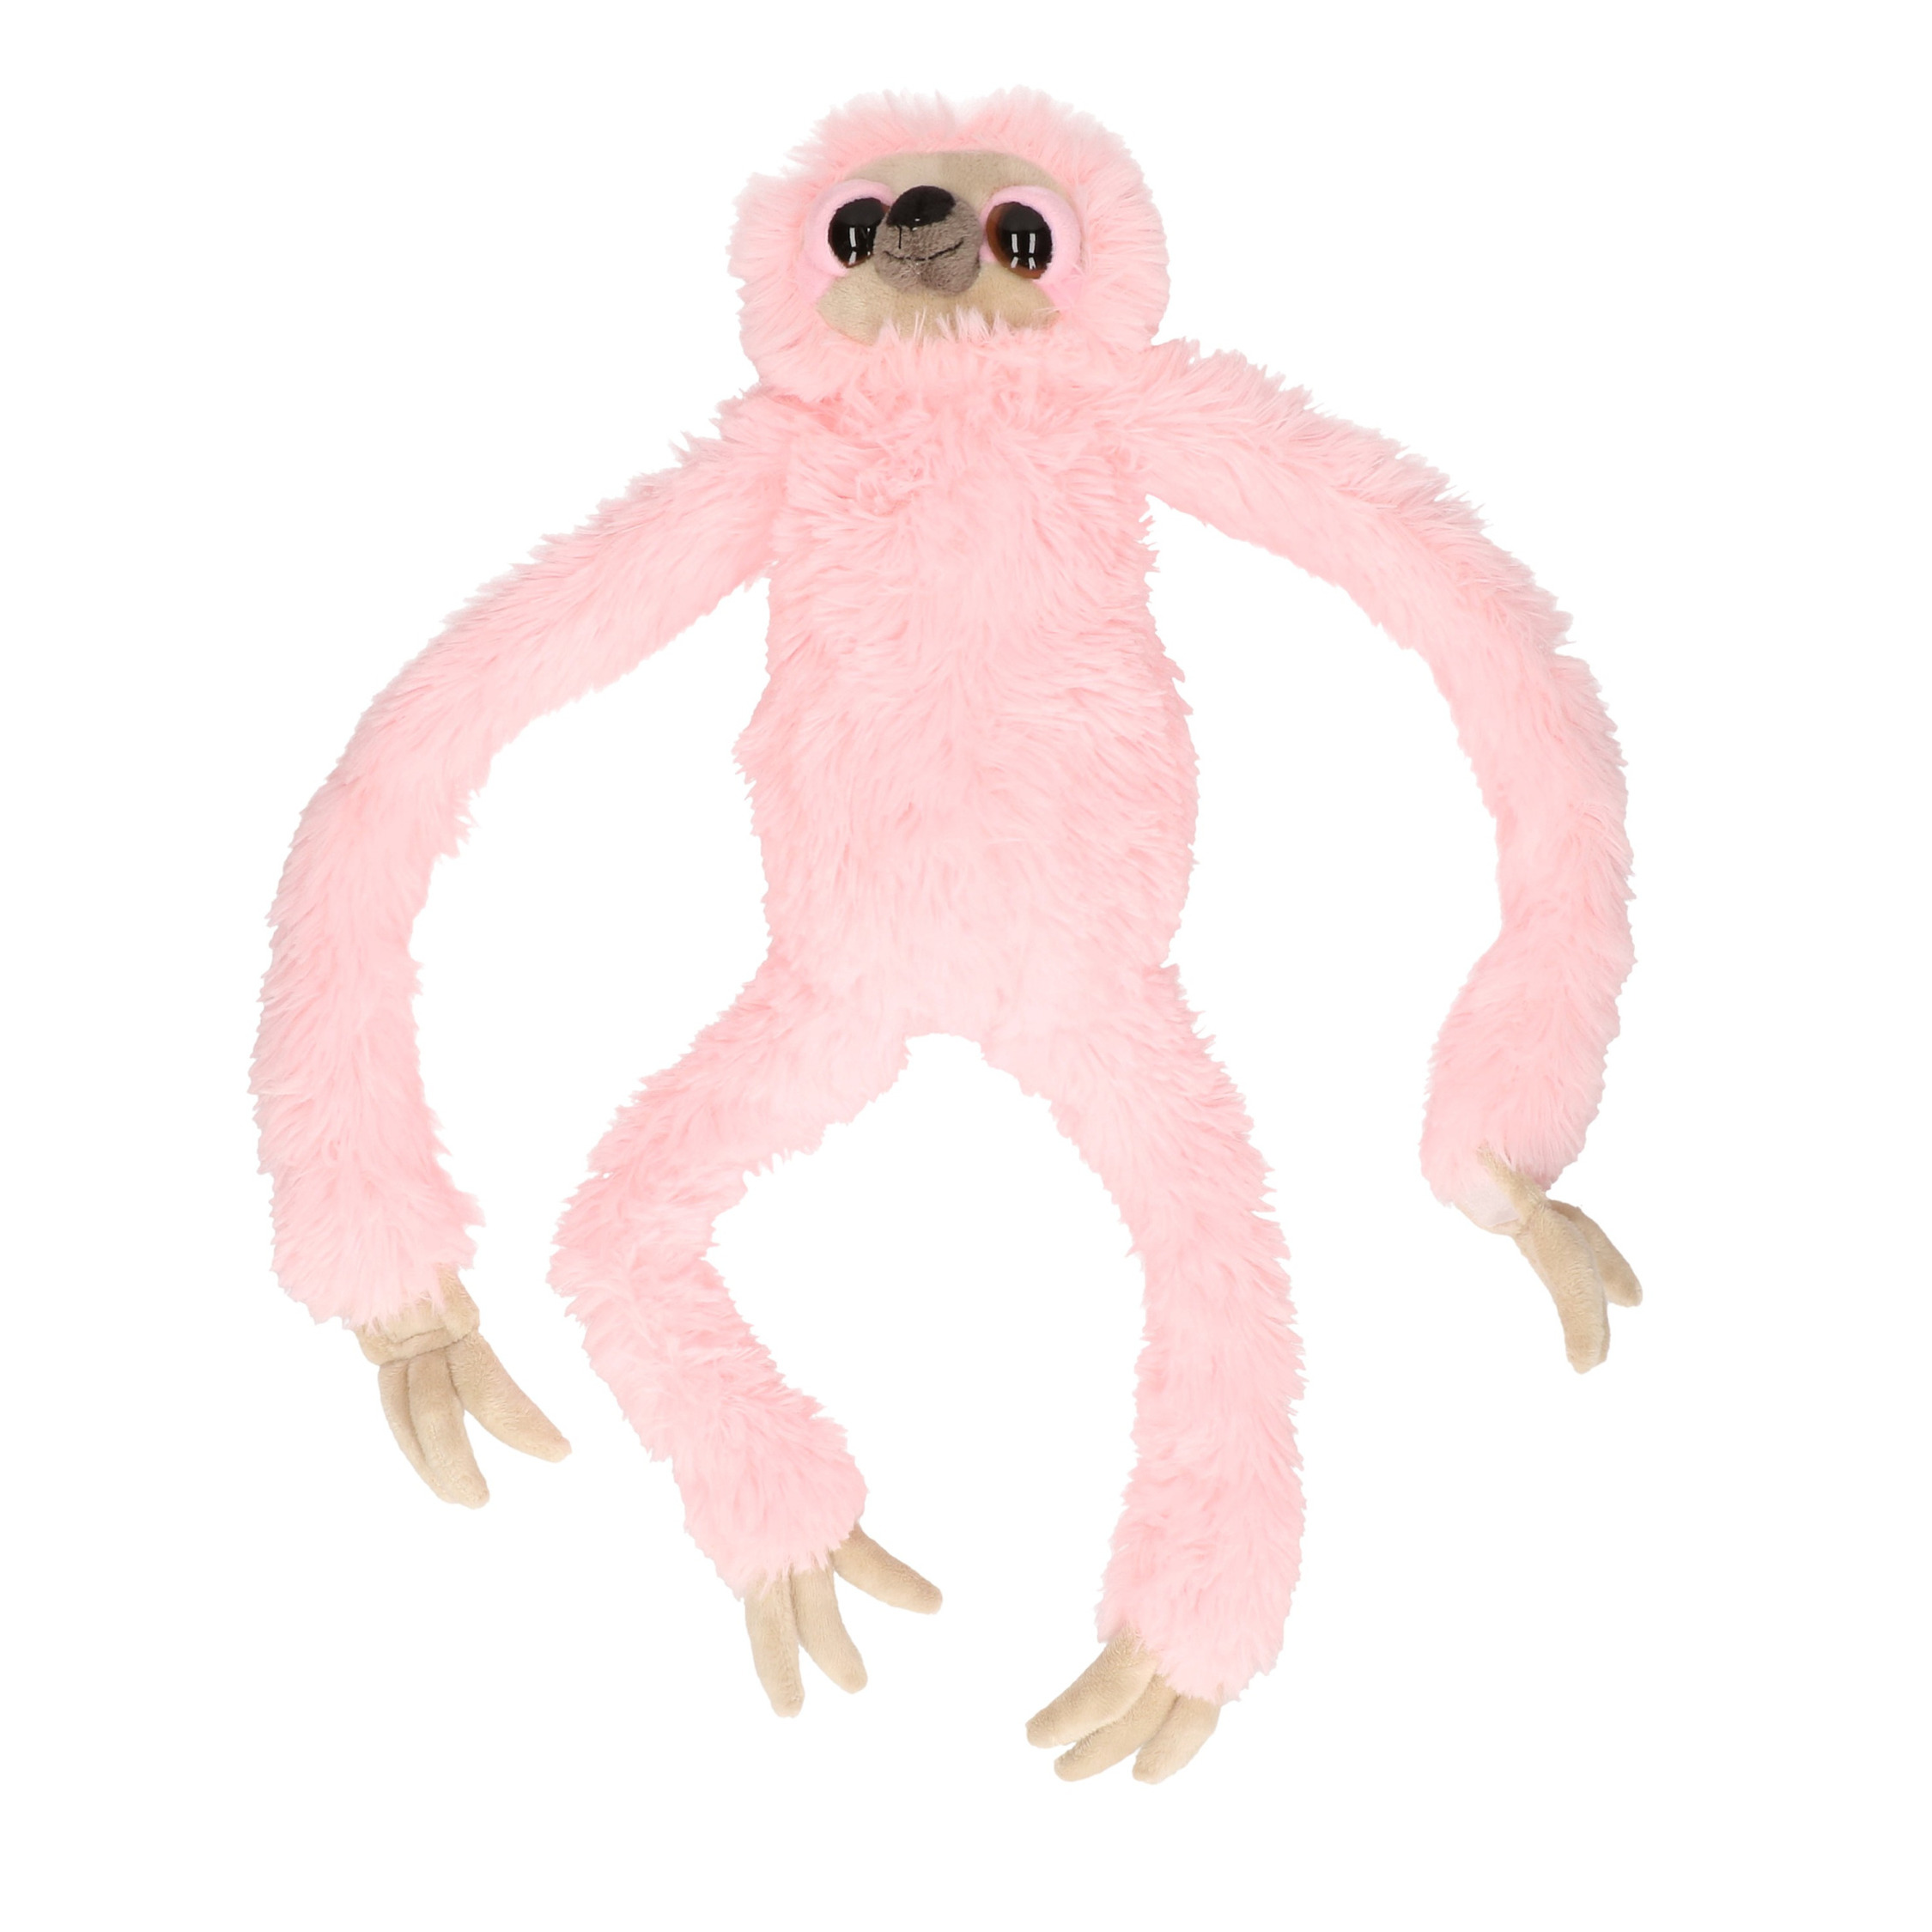 Nature Planet Pluche roze luiaard knuffel 60 cm speelgoed -